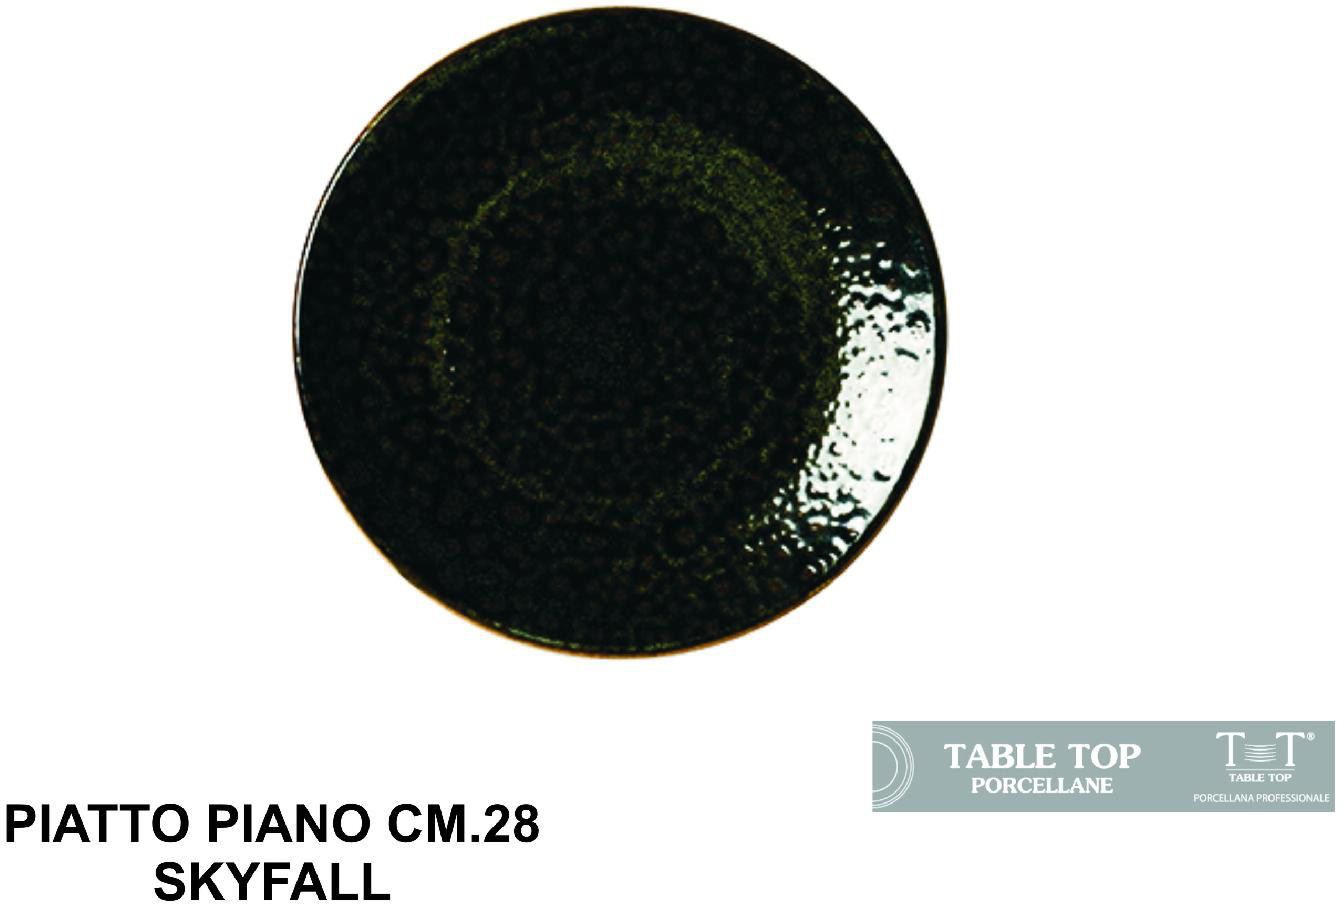 Table Top B1177 Piatto Piano cm 28 Skyfall